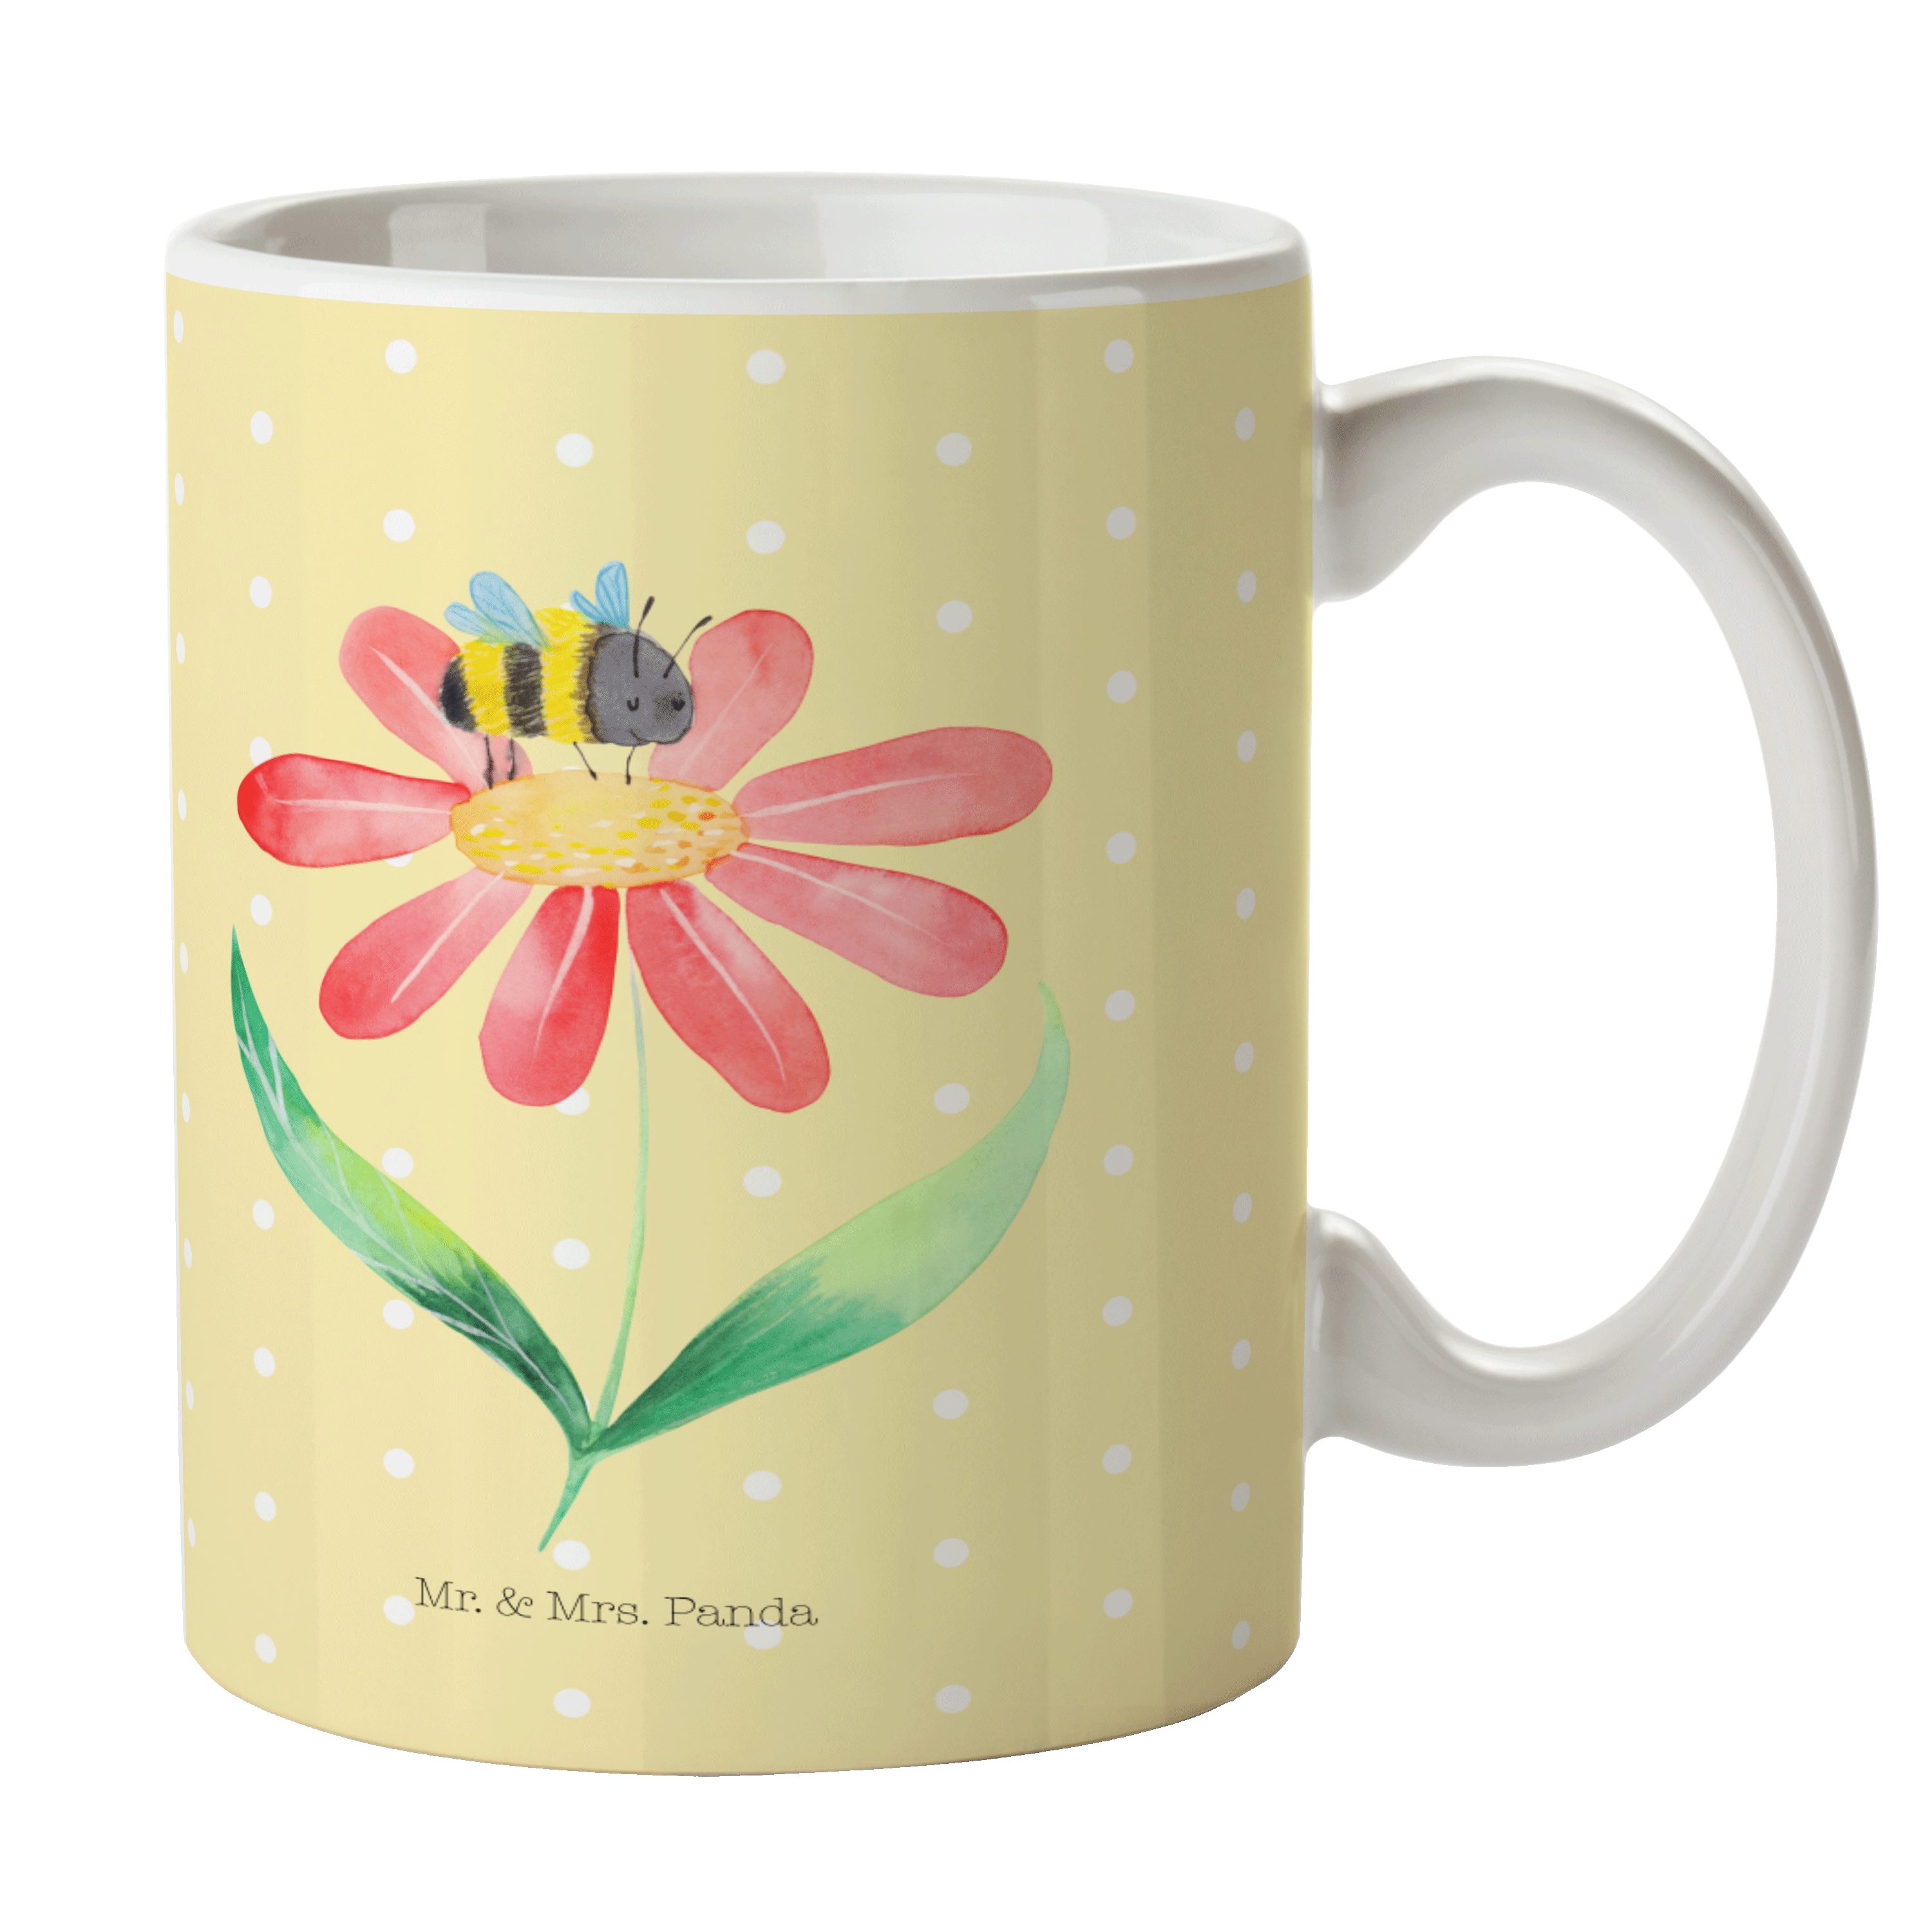 Mr. & Mrs. Panda Tasse Hummel Blume - Gelb Pastell - Geschenk, Kaffeebecher, lustige Sprüche, Keramik